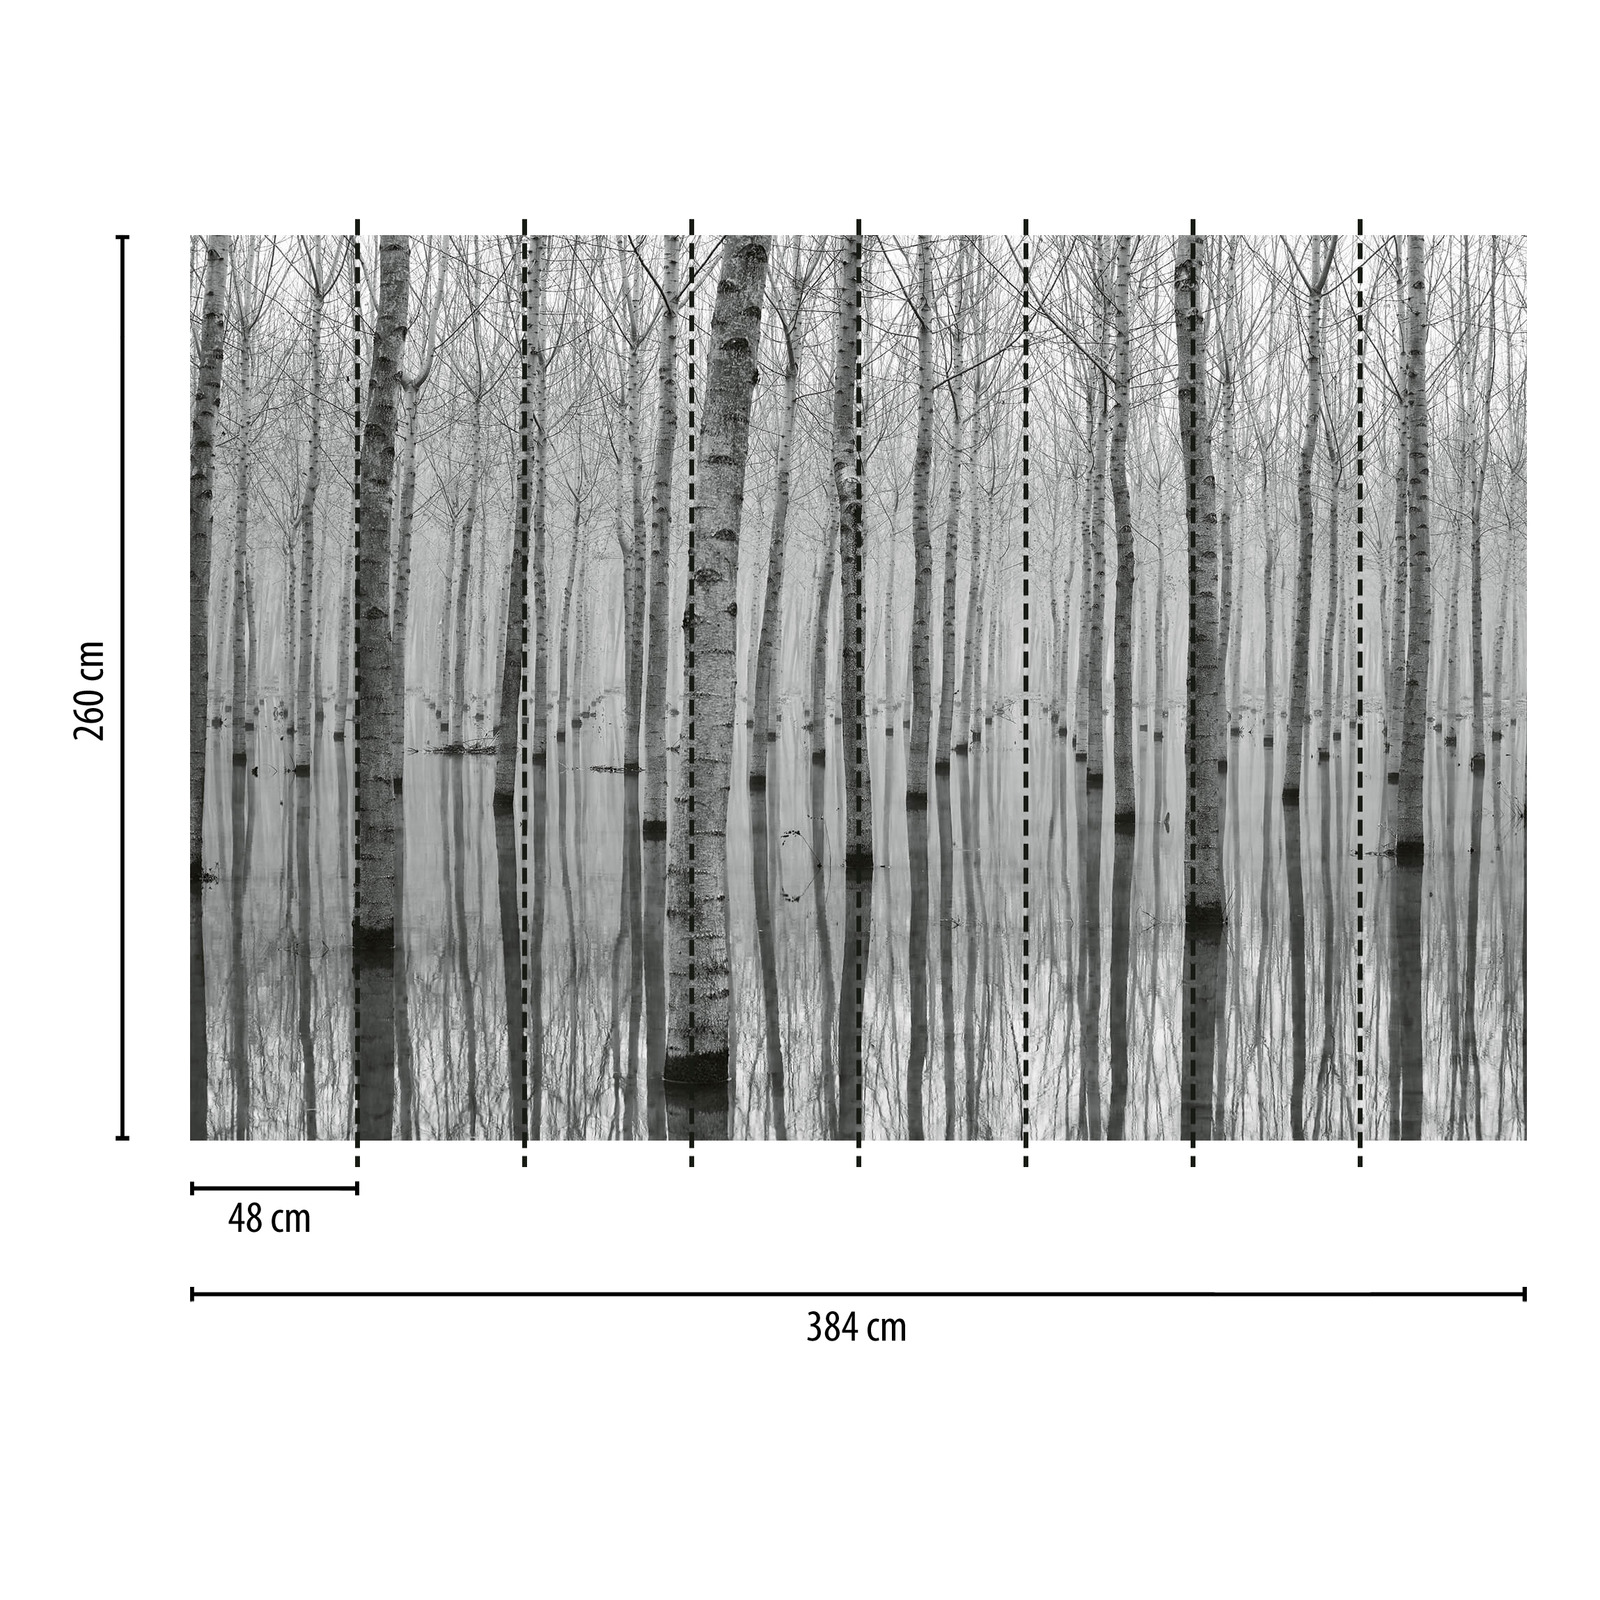             Fototapete Wald Birken im Wasser – Schwarz, Weiß, Grau
        